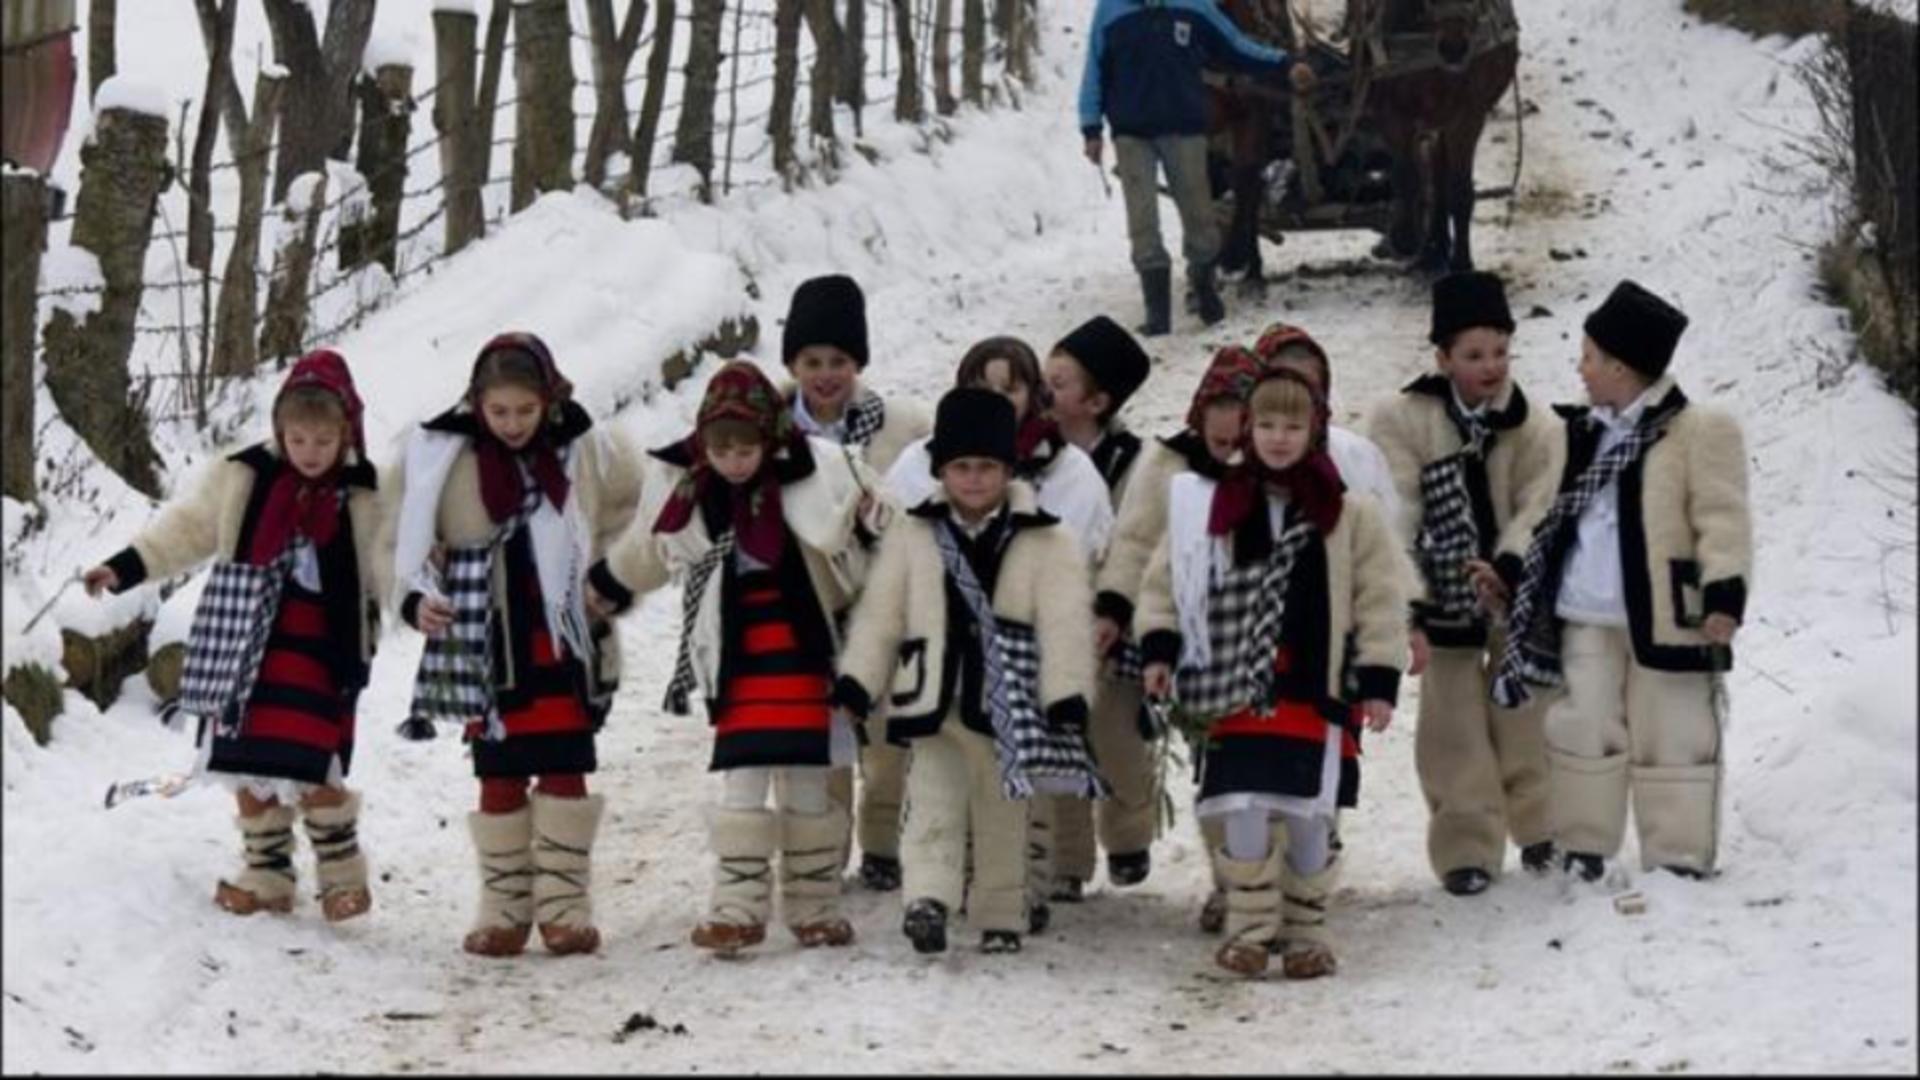 Românii sărbătoresc Crăciunul - tradiții, obiceiuri și superstiții